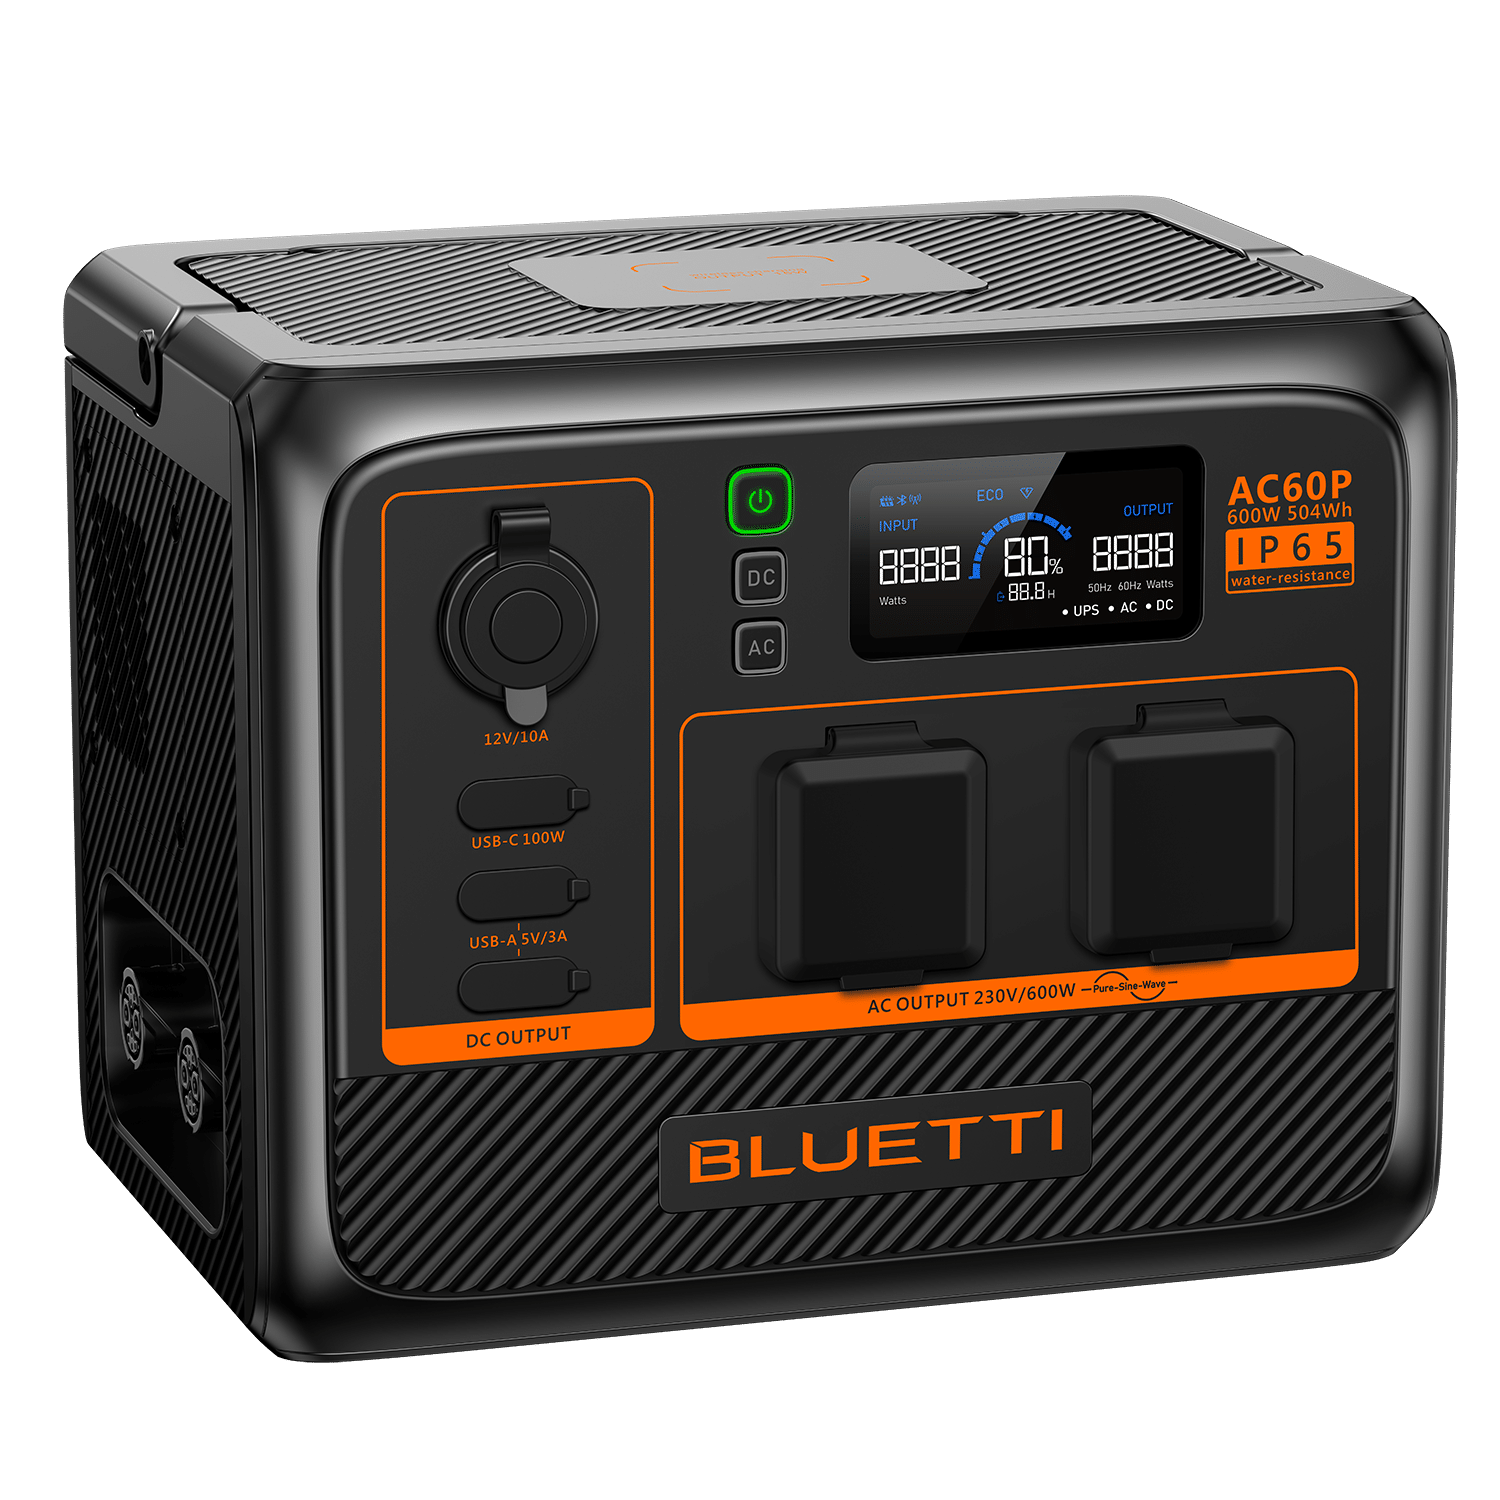 Die BLUETTI AC60P Powerstation von Flying Movies ist eine zuverlässige IP65 geschützte Powerstation mit einer Kapazität von 504 Wh.